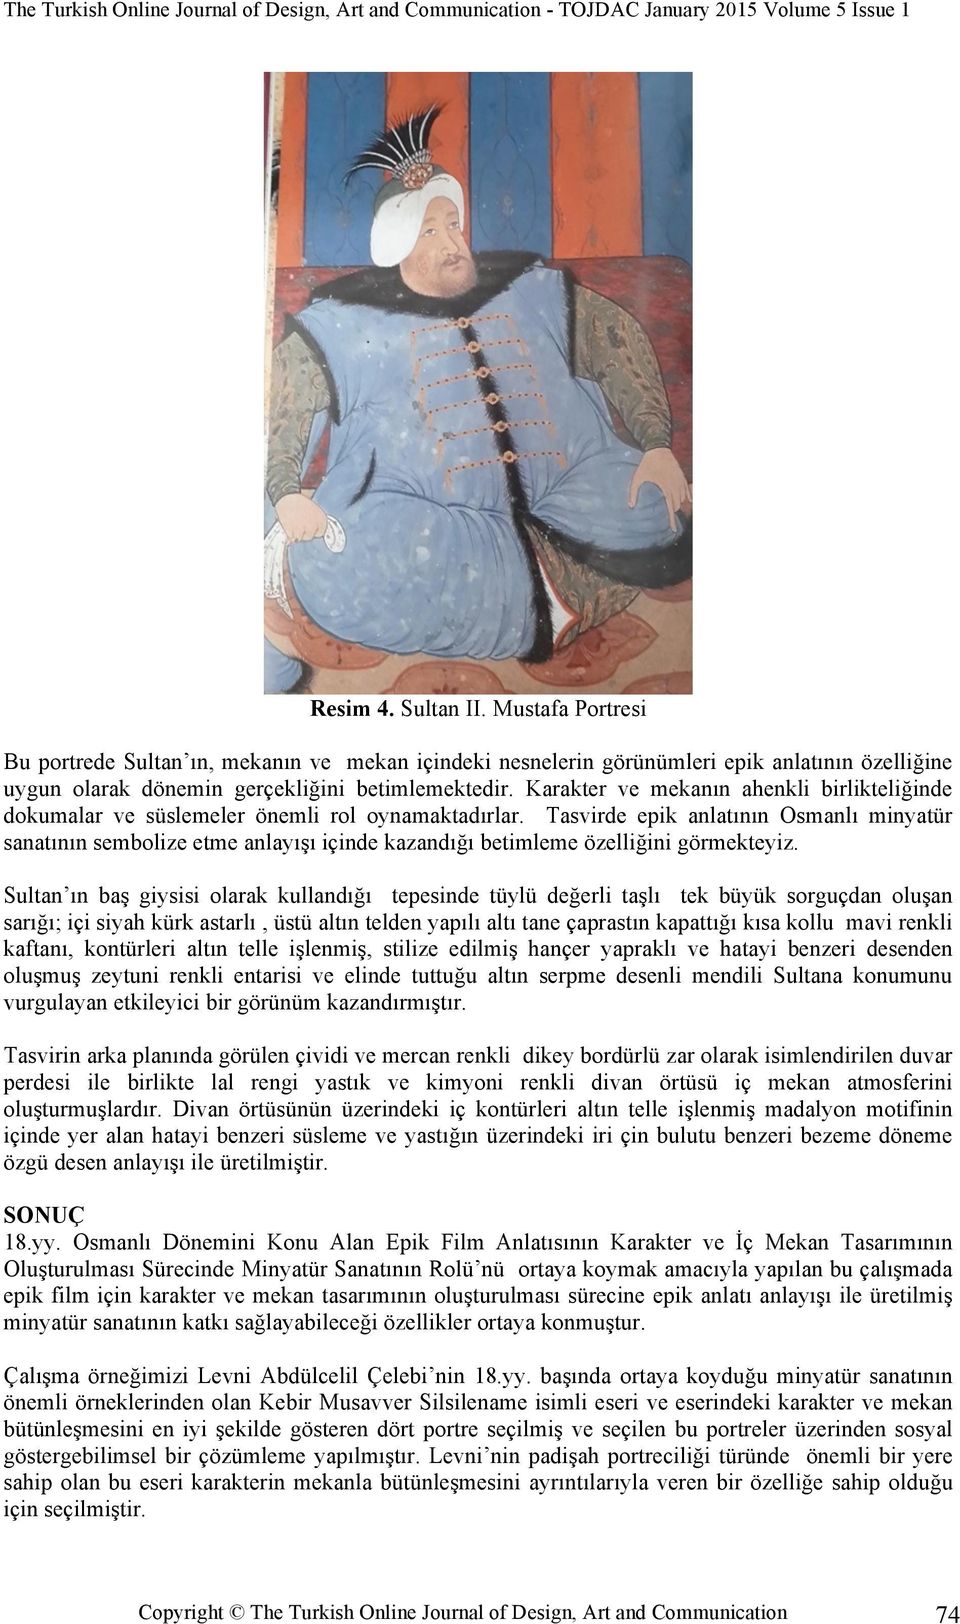 Tasvirde epik anlatının Osmanlı minyatür sanatının sembolize etme anlayışı içinde kazandığı betimleme özelliğini görmekteyiz.